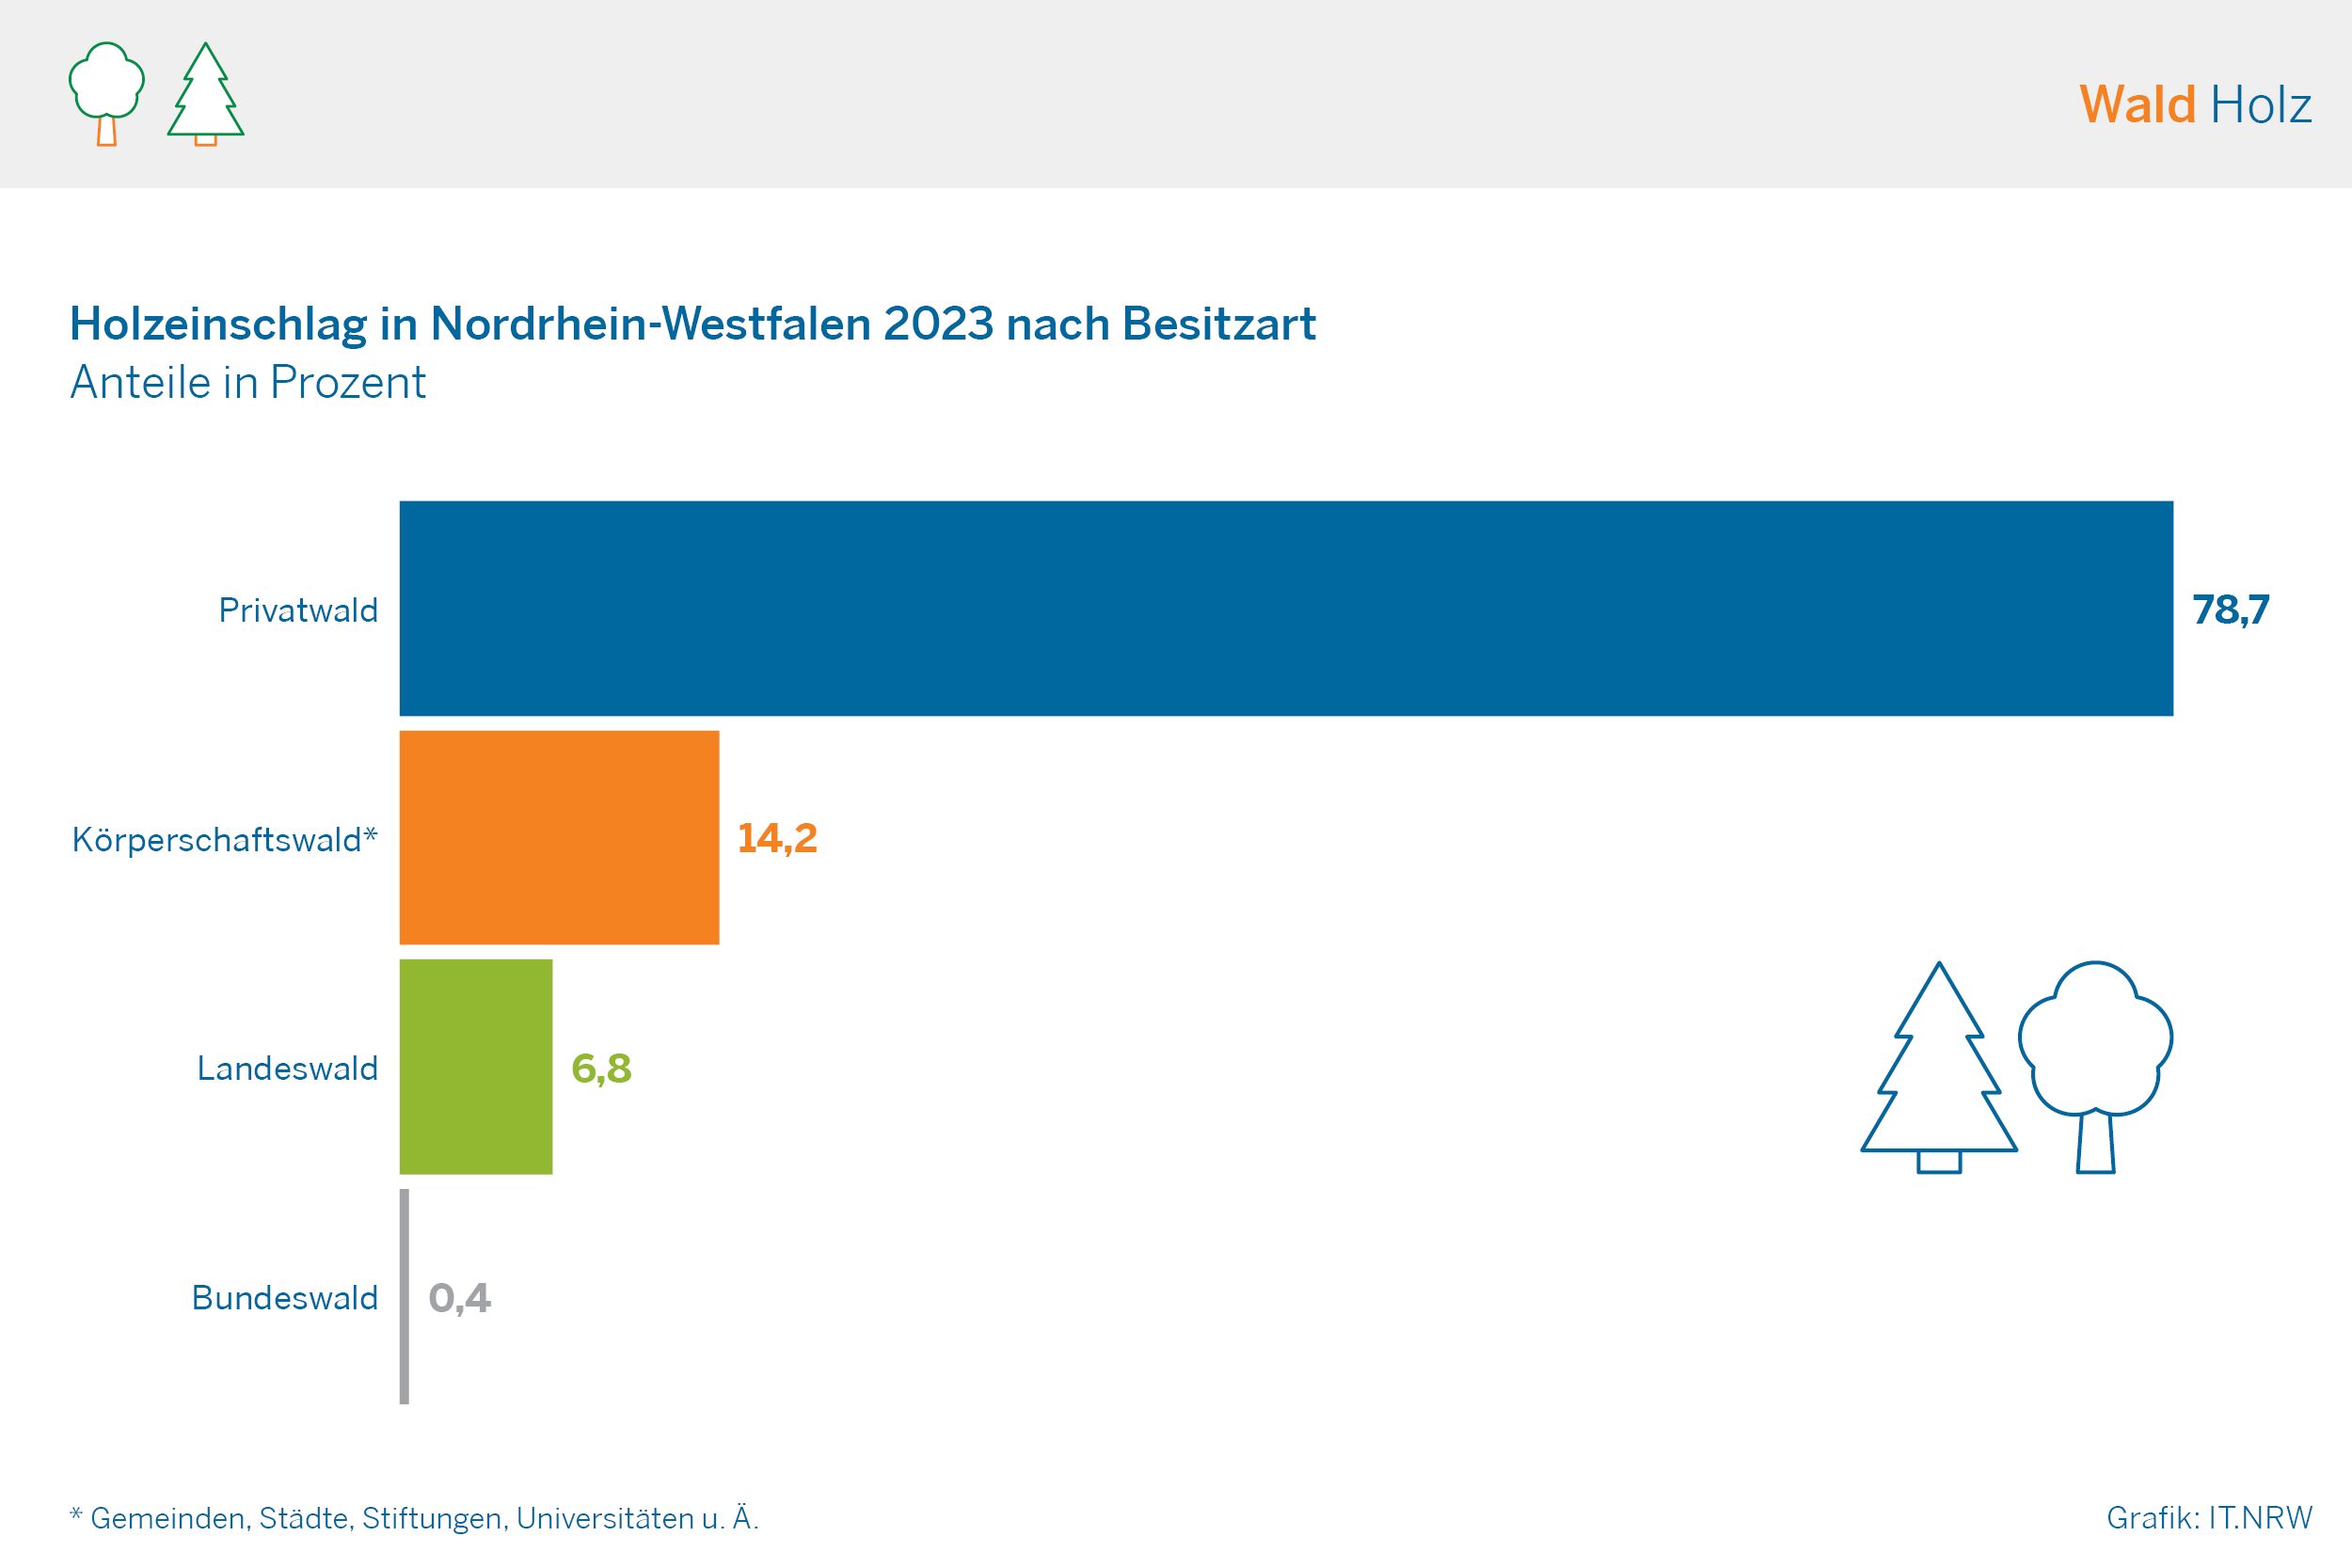 Holzeinschlag in Nordrhein-Westfalen 2023 nach Besitzart